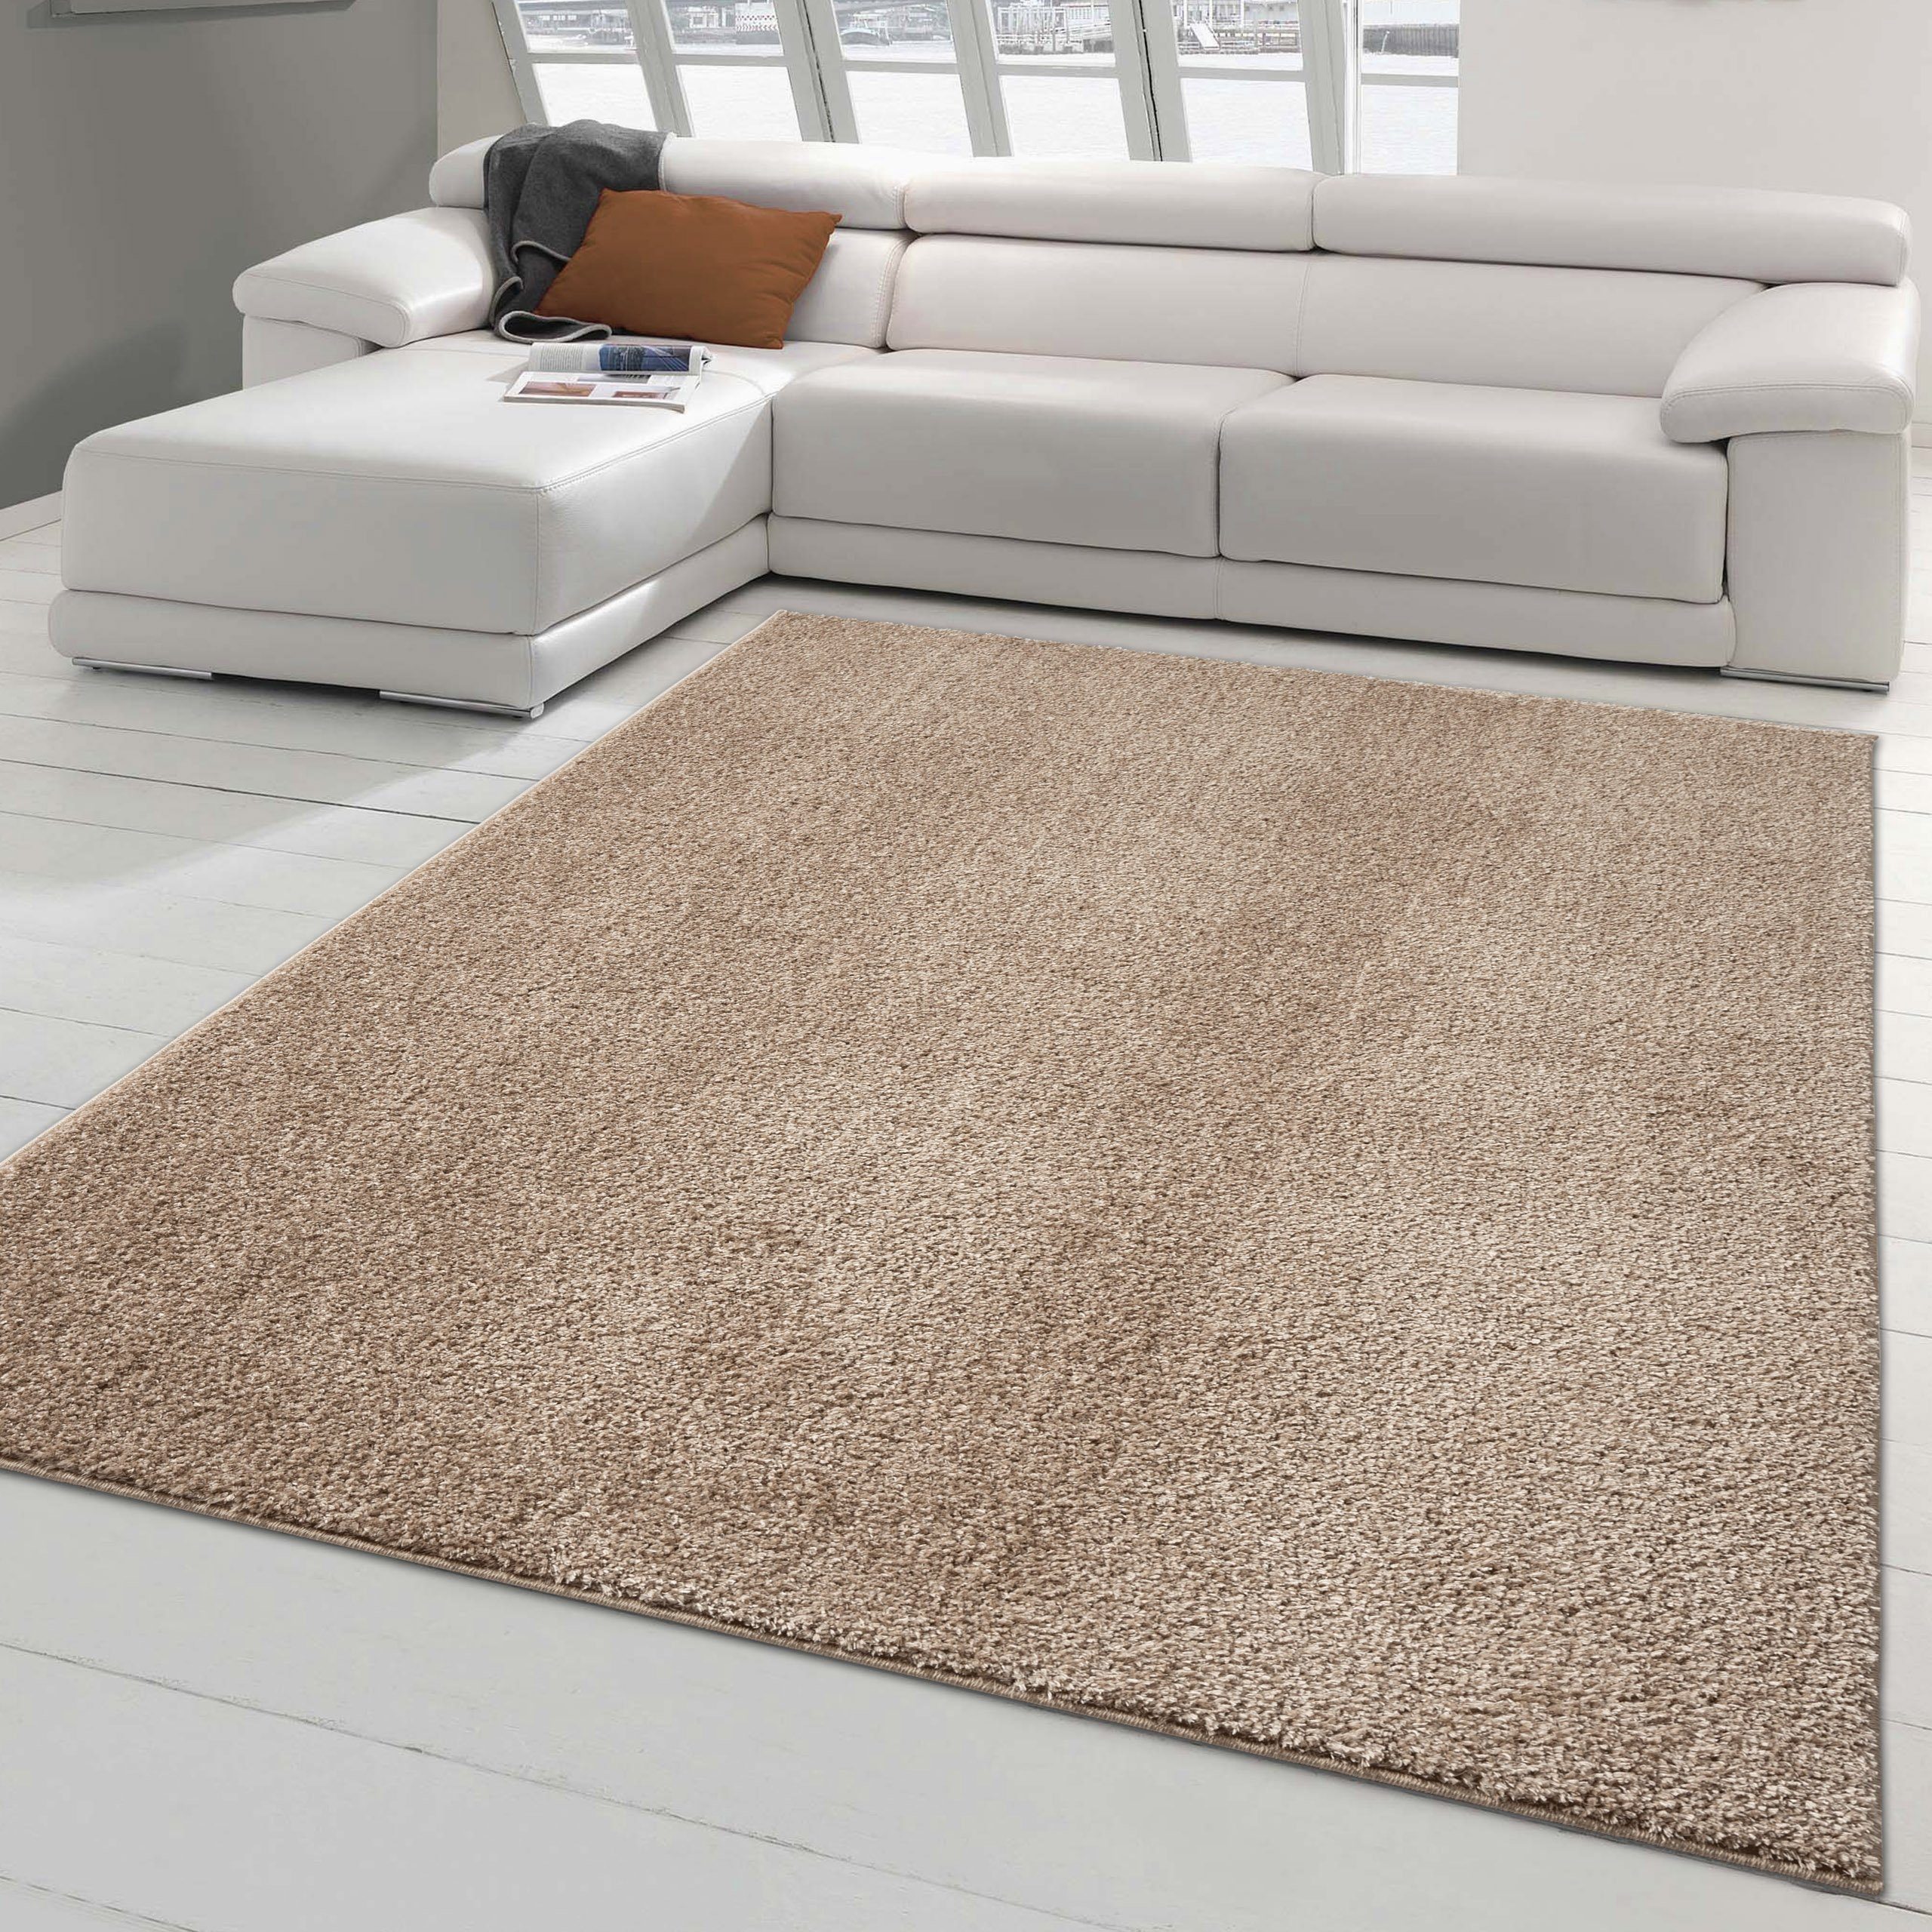 Klassischer Teppich warm beige, heller erscheinend, & gekettelt rechteckig, einfarbig Licht / Teppich-Traum, Flauschteppich, (langlebig), dunkler kuschelig, Waschbar Rundherum in Je